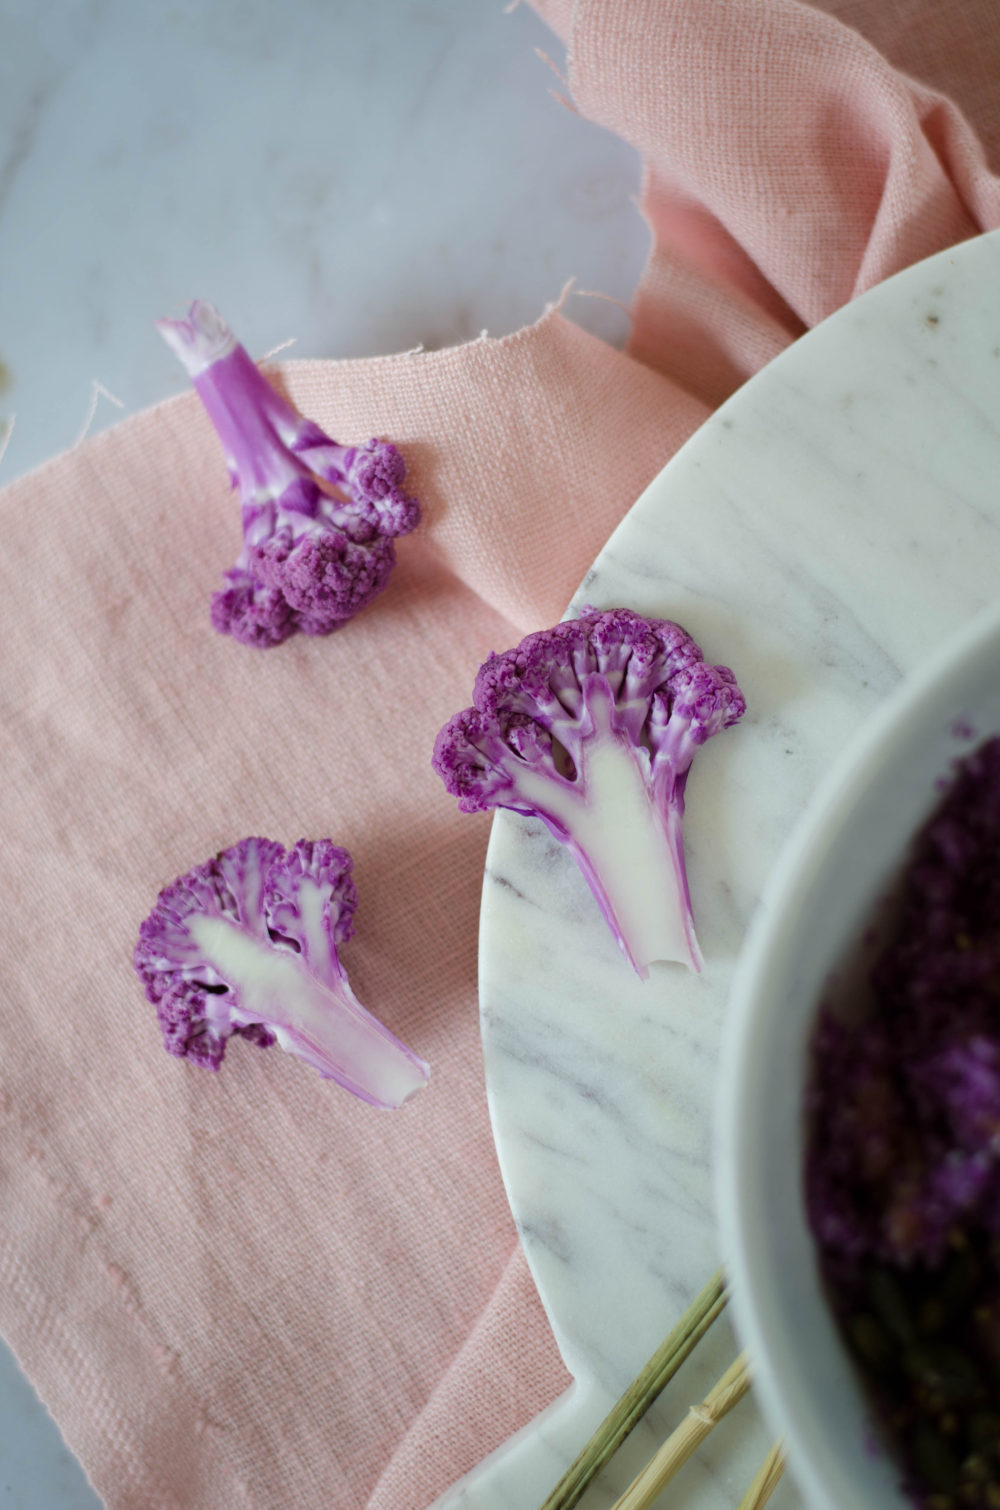 Taboulé de chou-fleur violet